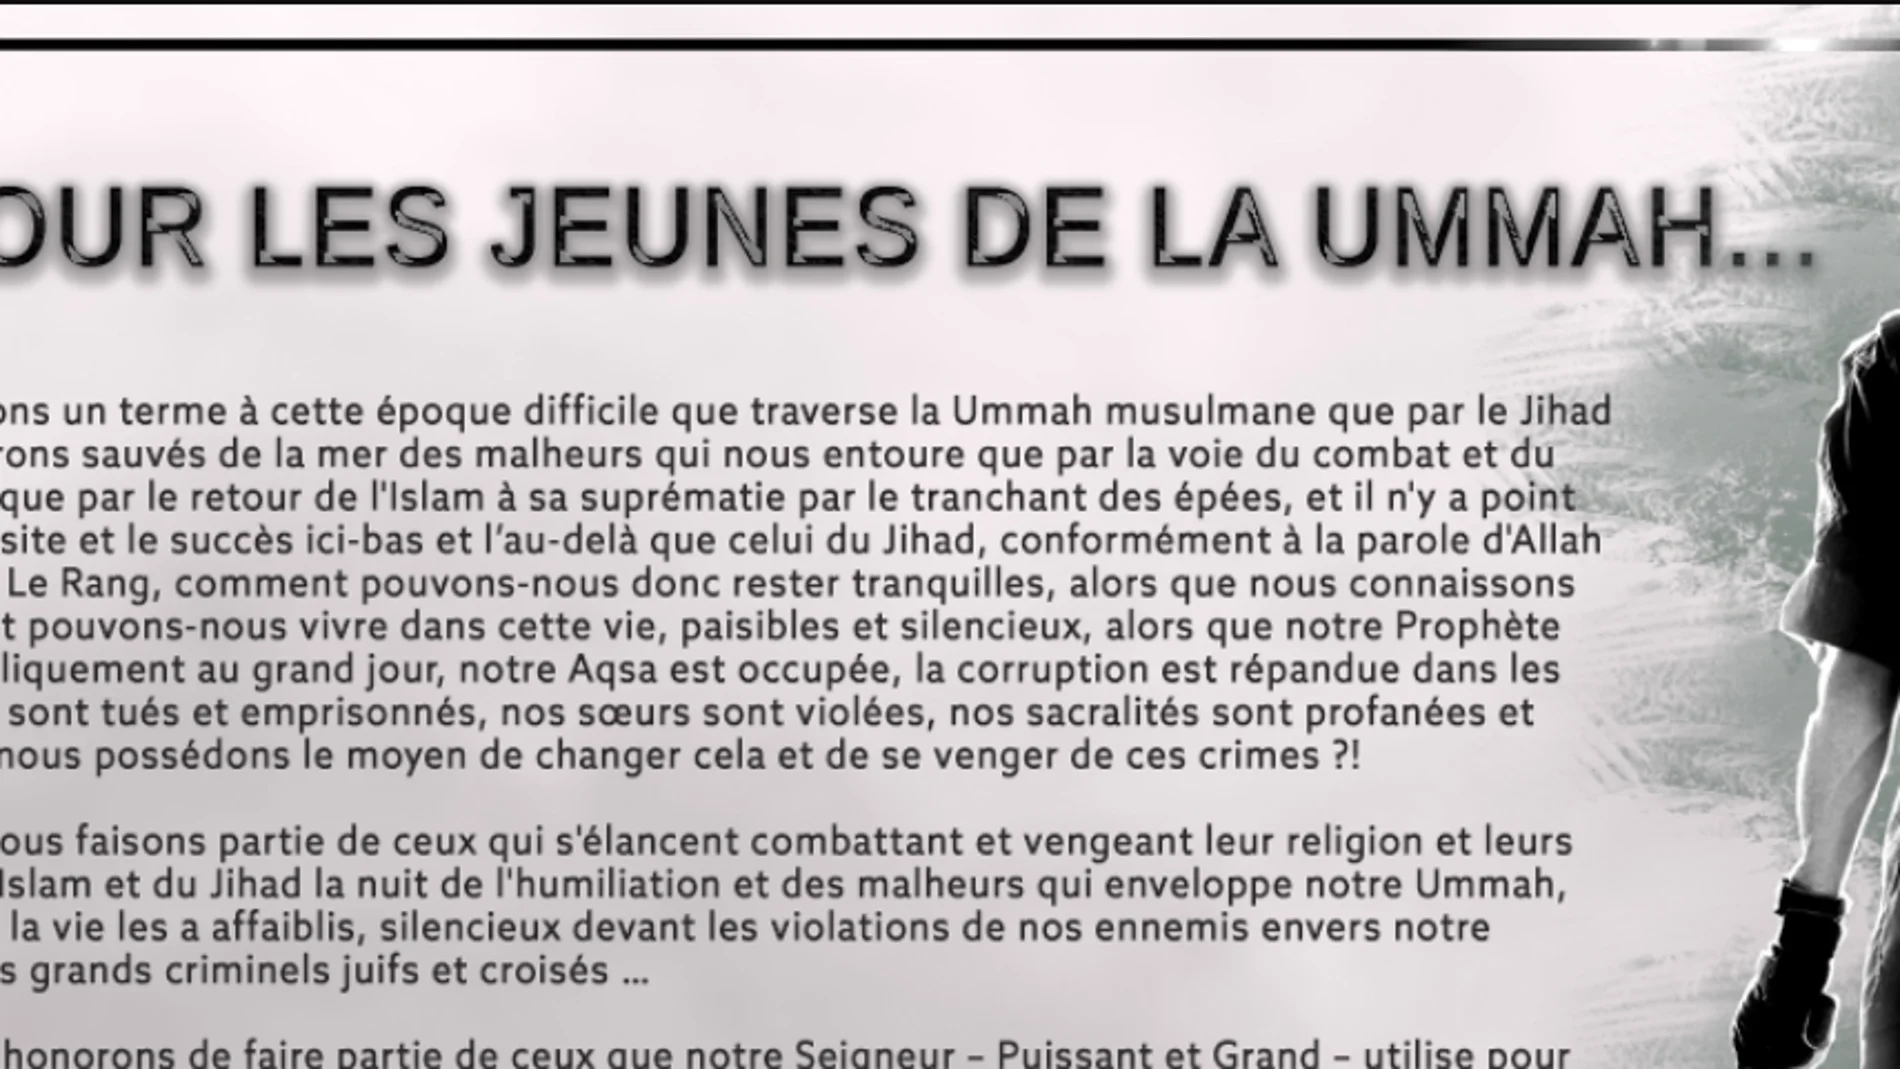 Mensaje dirigido a los jóvenes musulmanes franceses